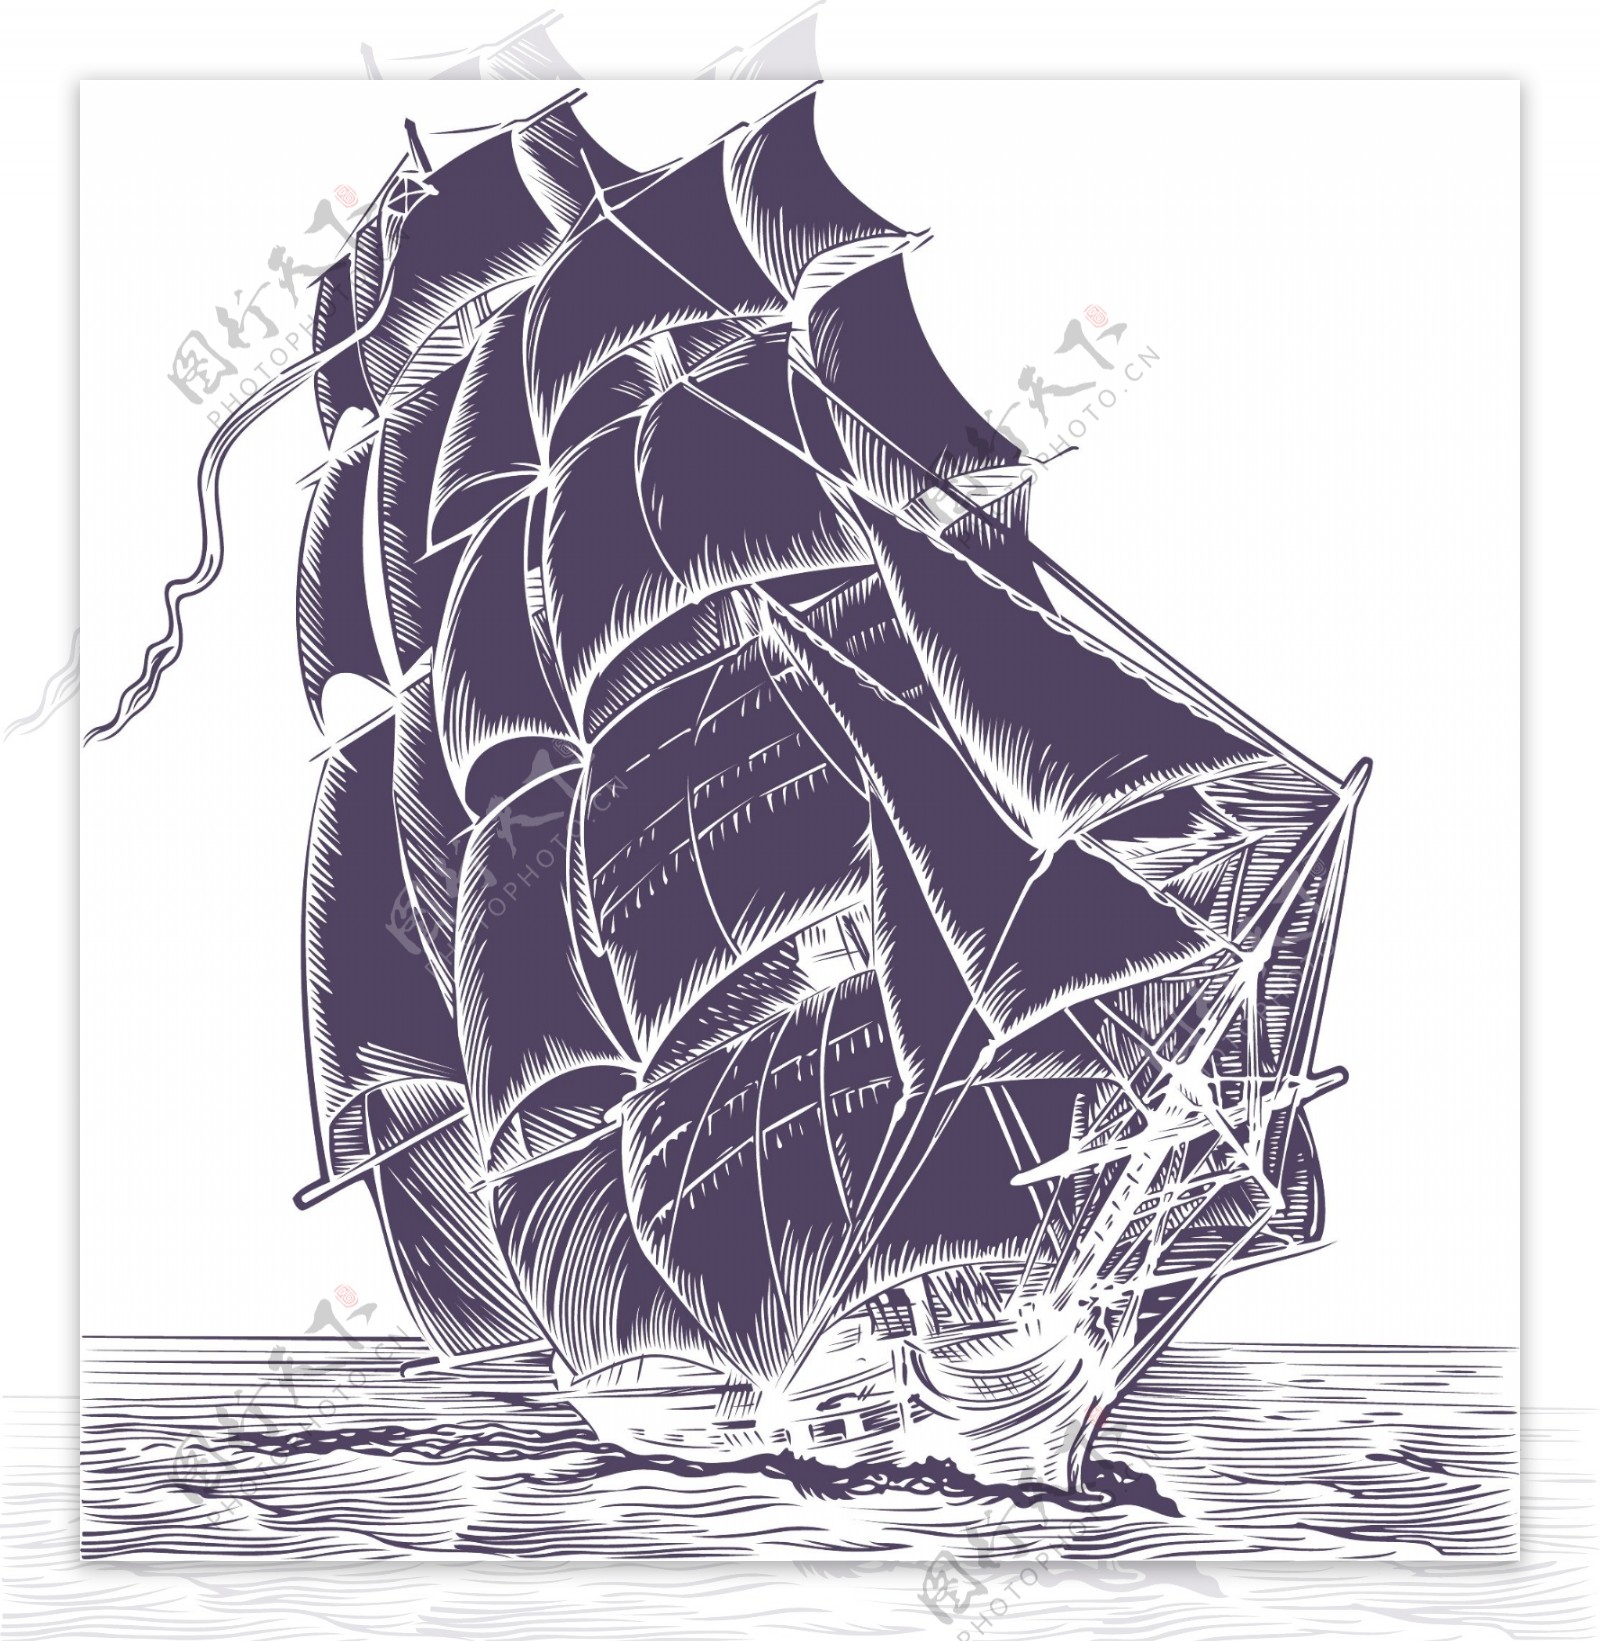 钢笔画风格矢量素材的船只航行海洋的钢笔画